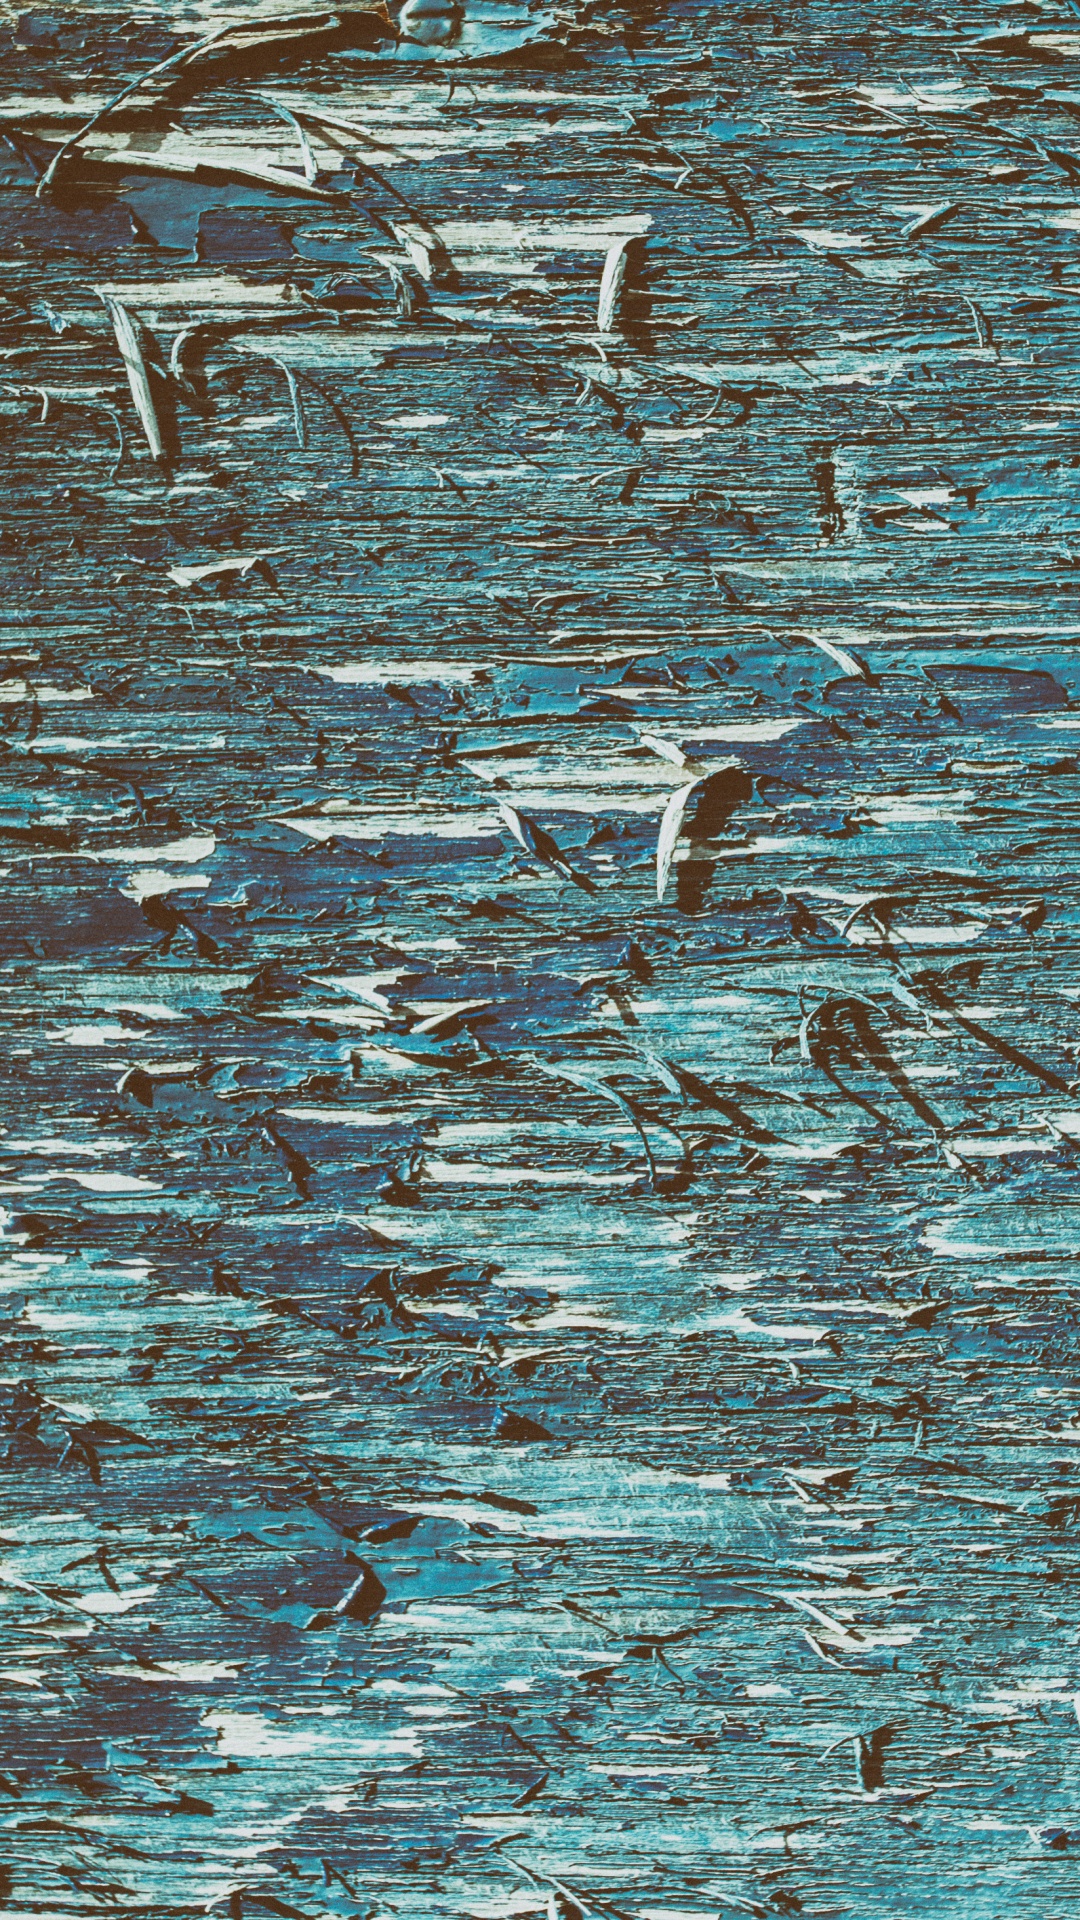 Oiseaux Blancs et Noirs Sur L'eau. Wallpaper in 1080x1920 Resolution